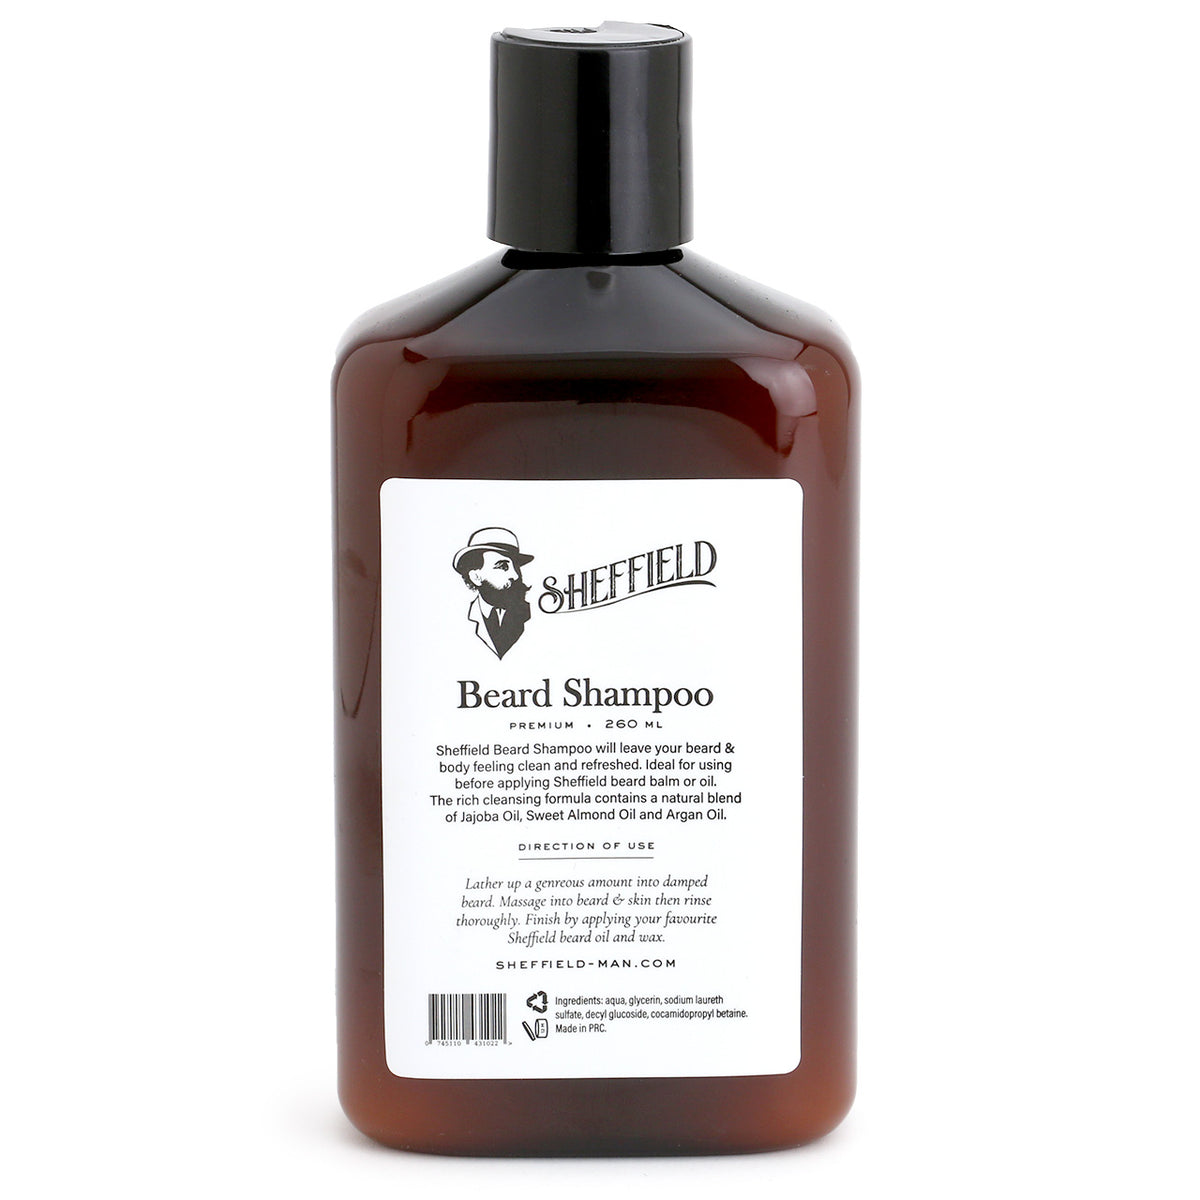 Sheffield Beard Shampoo bottle